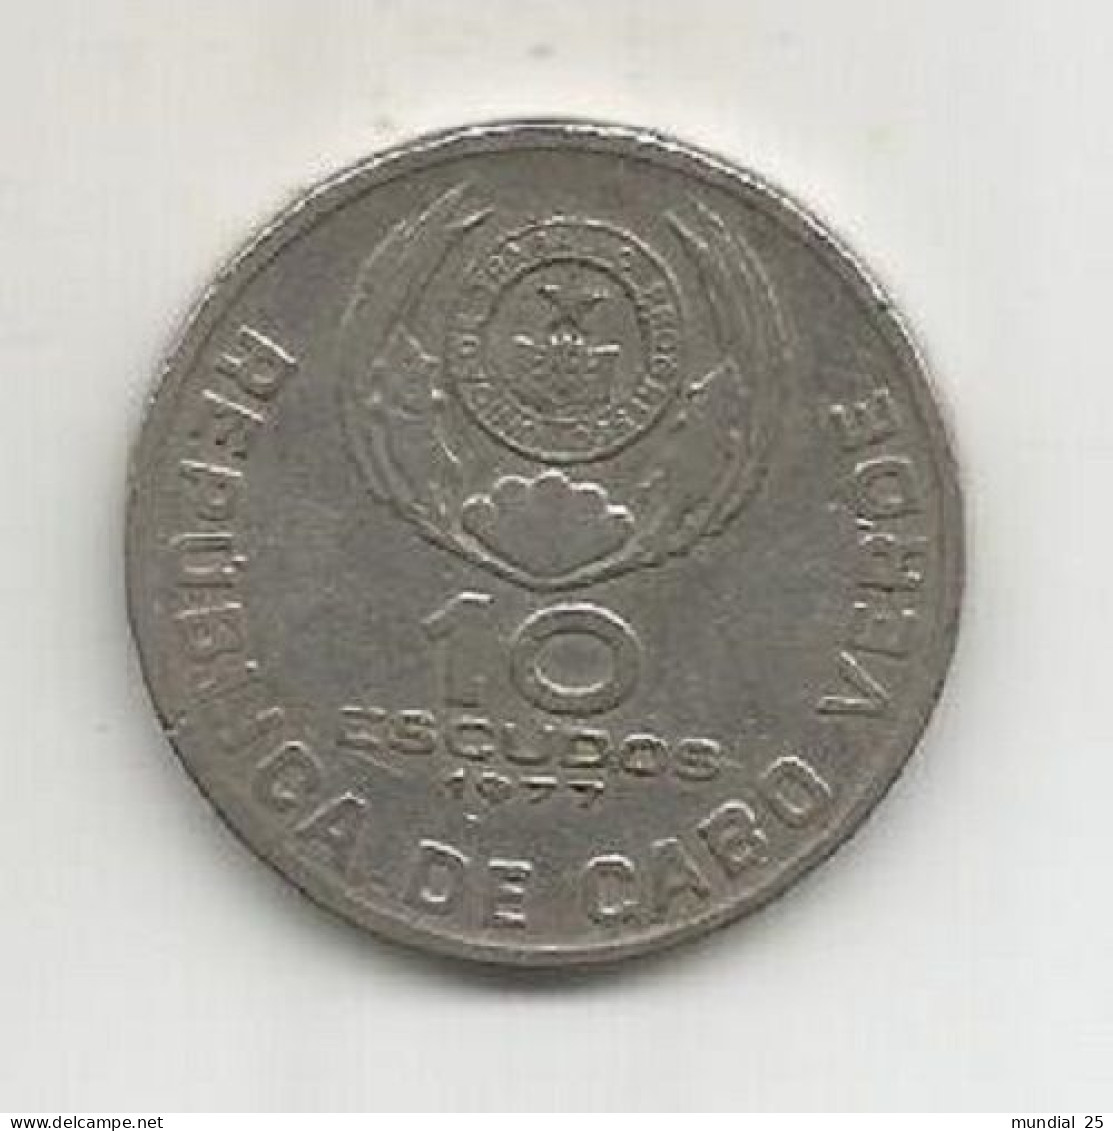 CAPE VERDE 10$00 ESCUDOS 1977 - Cape Verde